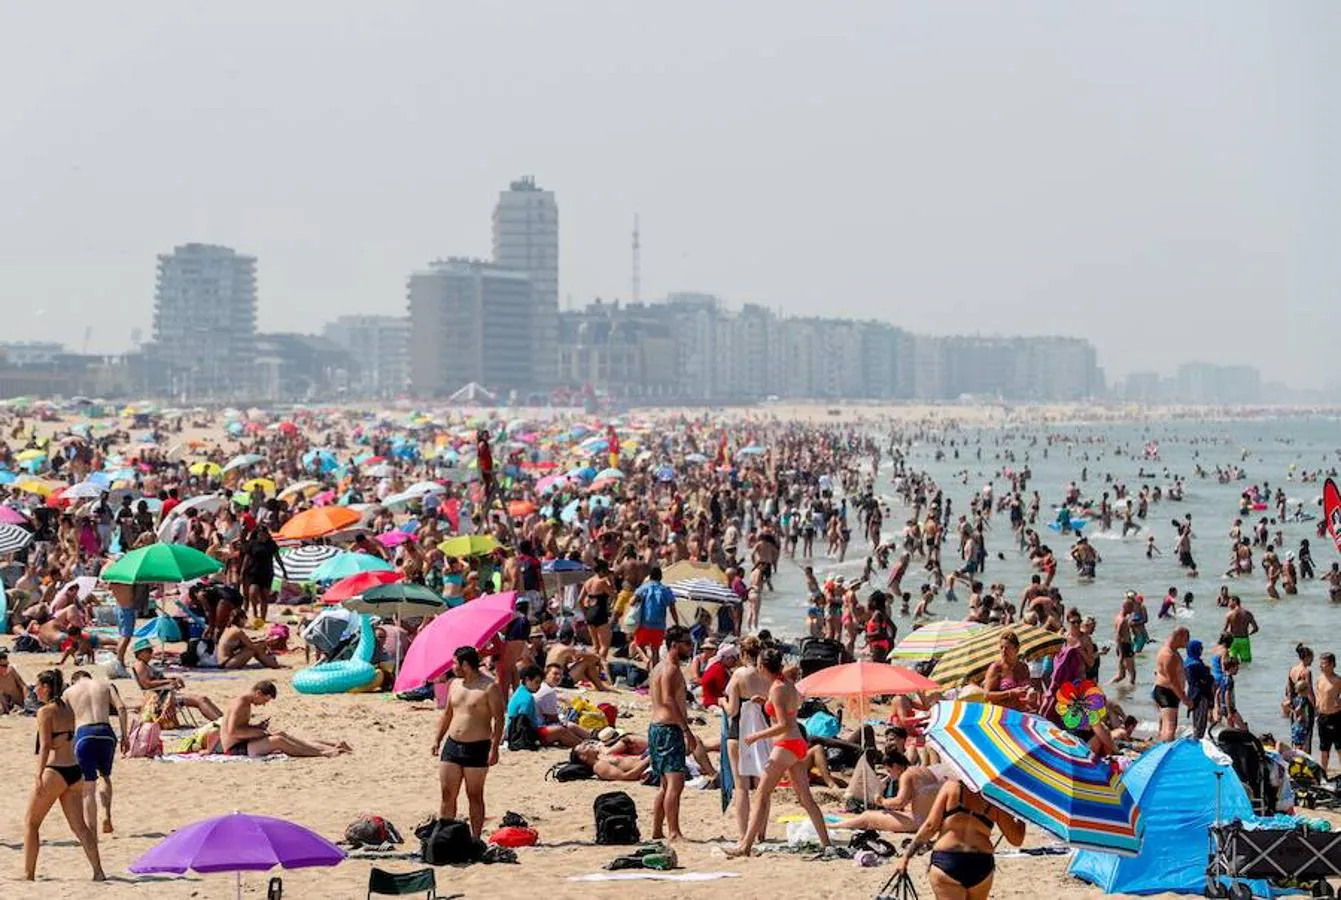 Las playas se colpasan en Ostende. Cientos de personas sofocan el calor en una playa de Ostende, Bélgica, durante una ola de calor en el país.